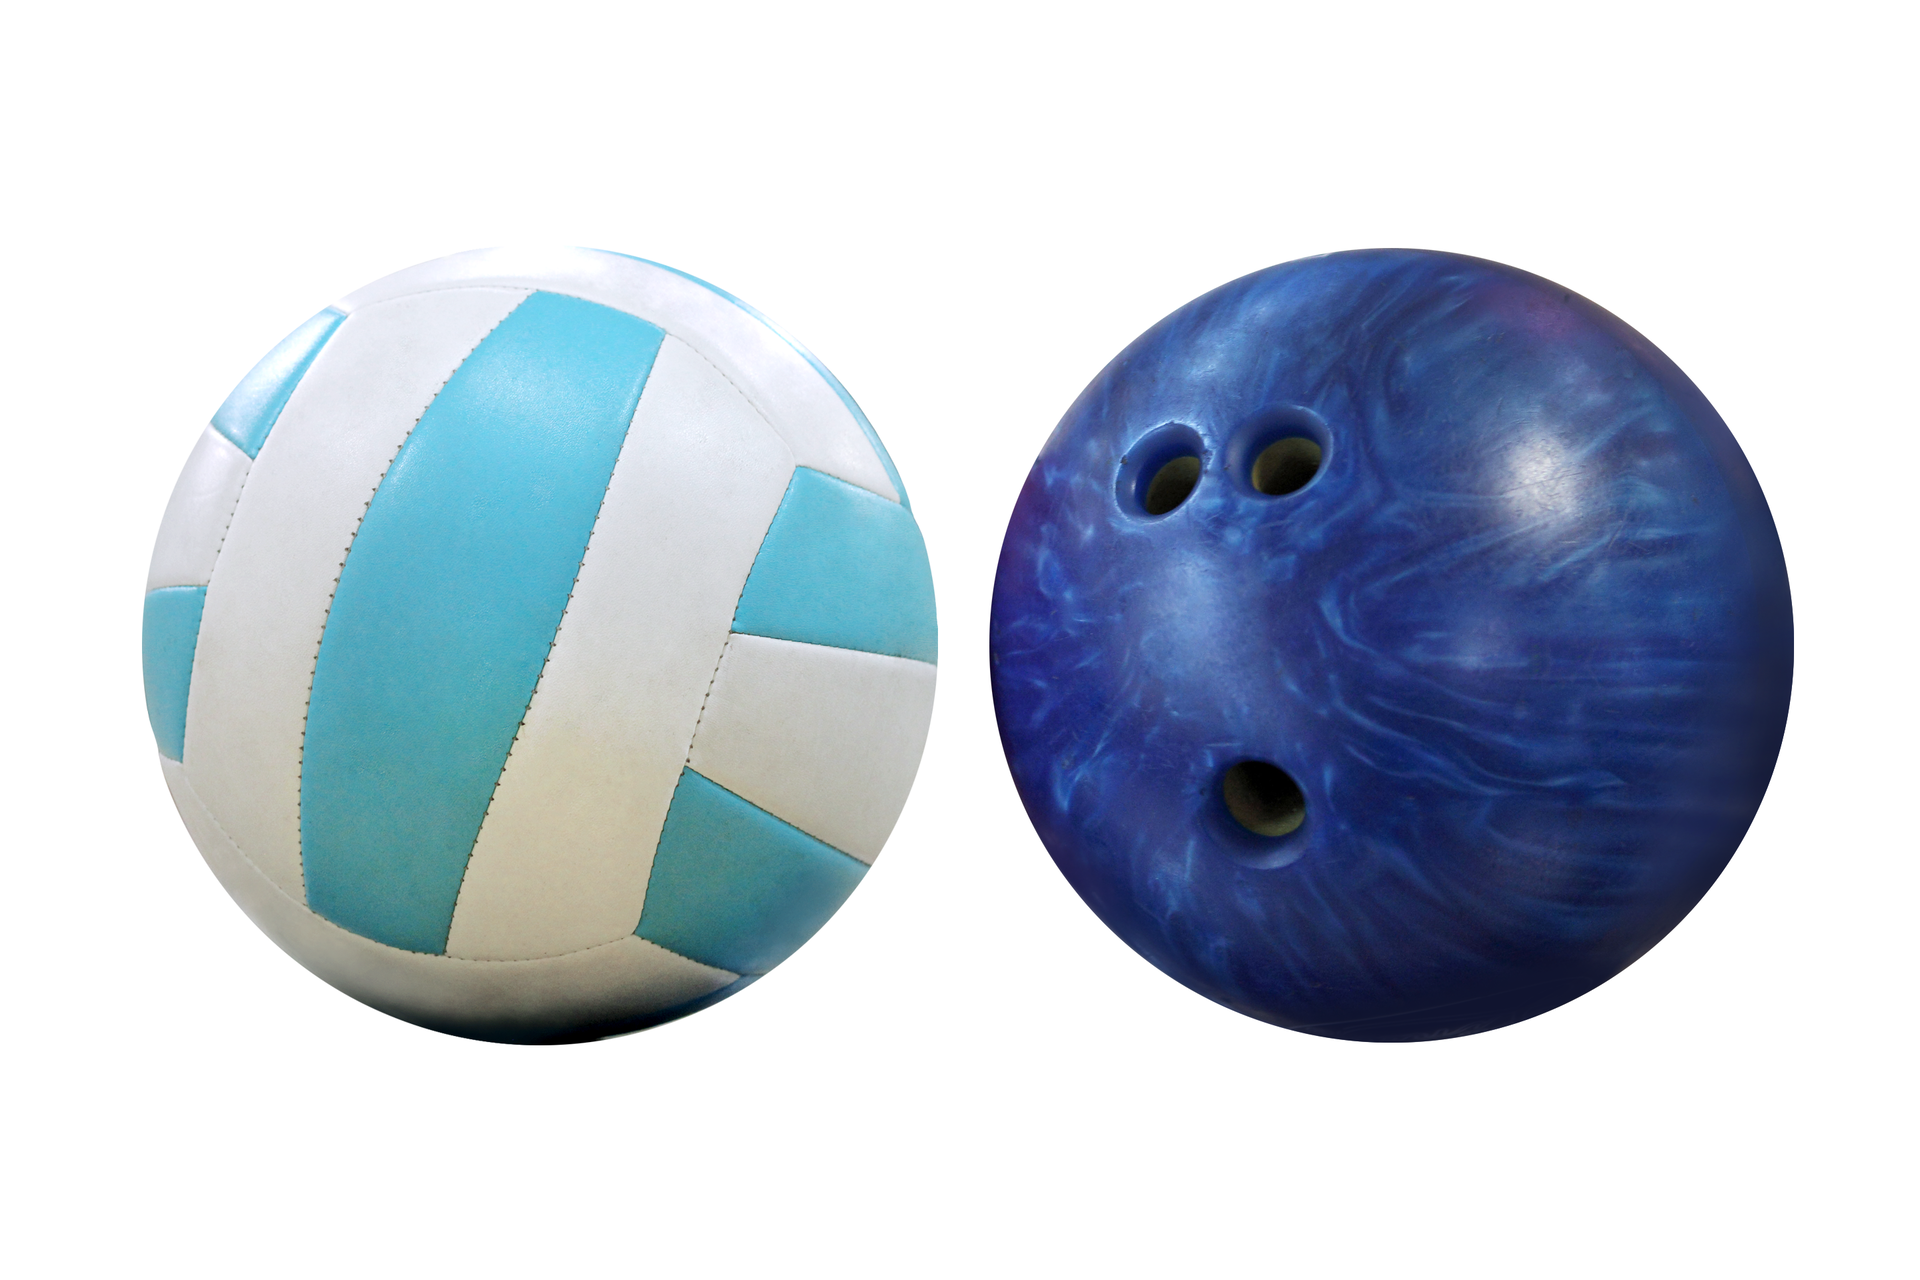 Obrazek przedstawia dwa umieszczone obok siebie kuliste przedmioty o zbliżonych wielkościach. Piłka z lewej strony to biało-niebieska piłka do gry w siatkówkę. Po prawej strony znajduje się niebieska kula do gry w kręgle.